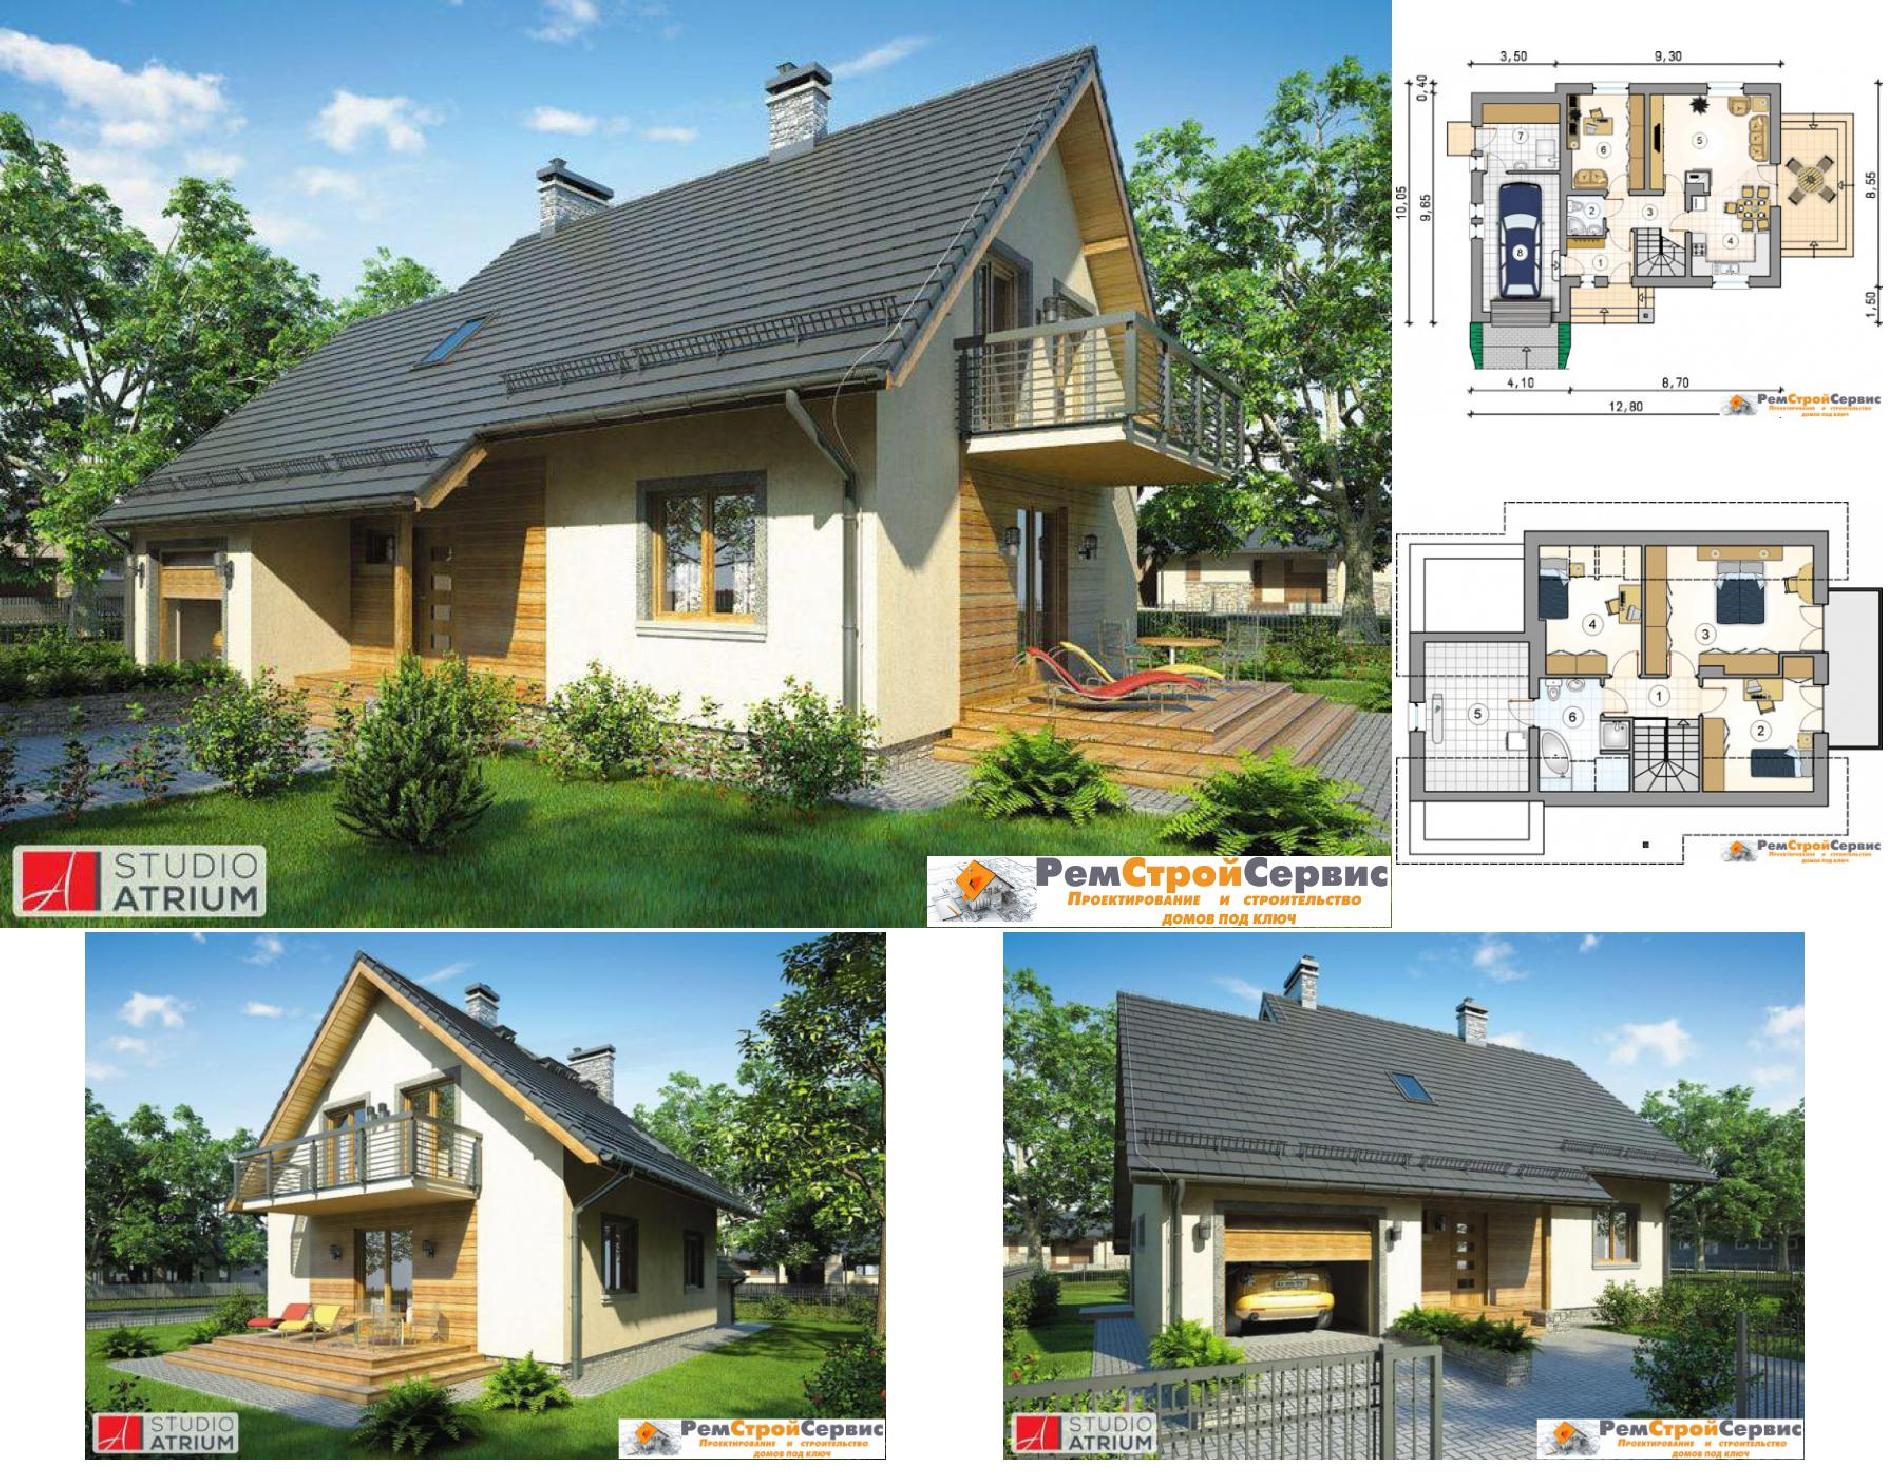 Проект дома №r-24-82 proect_r-24-82.jpg